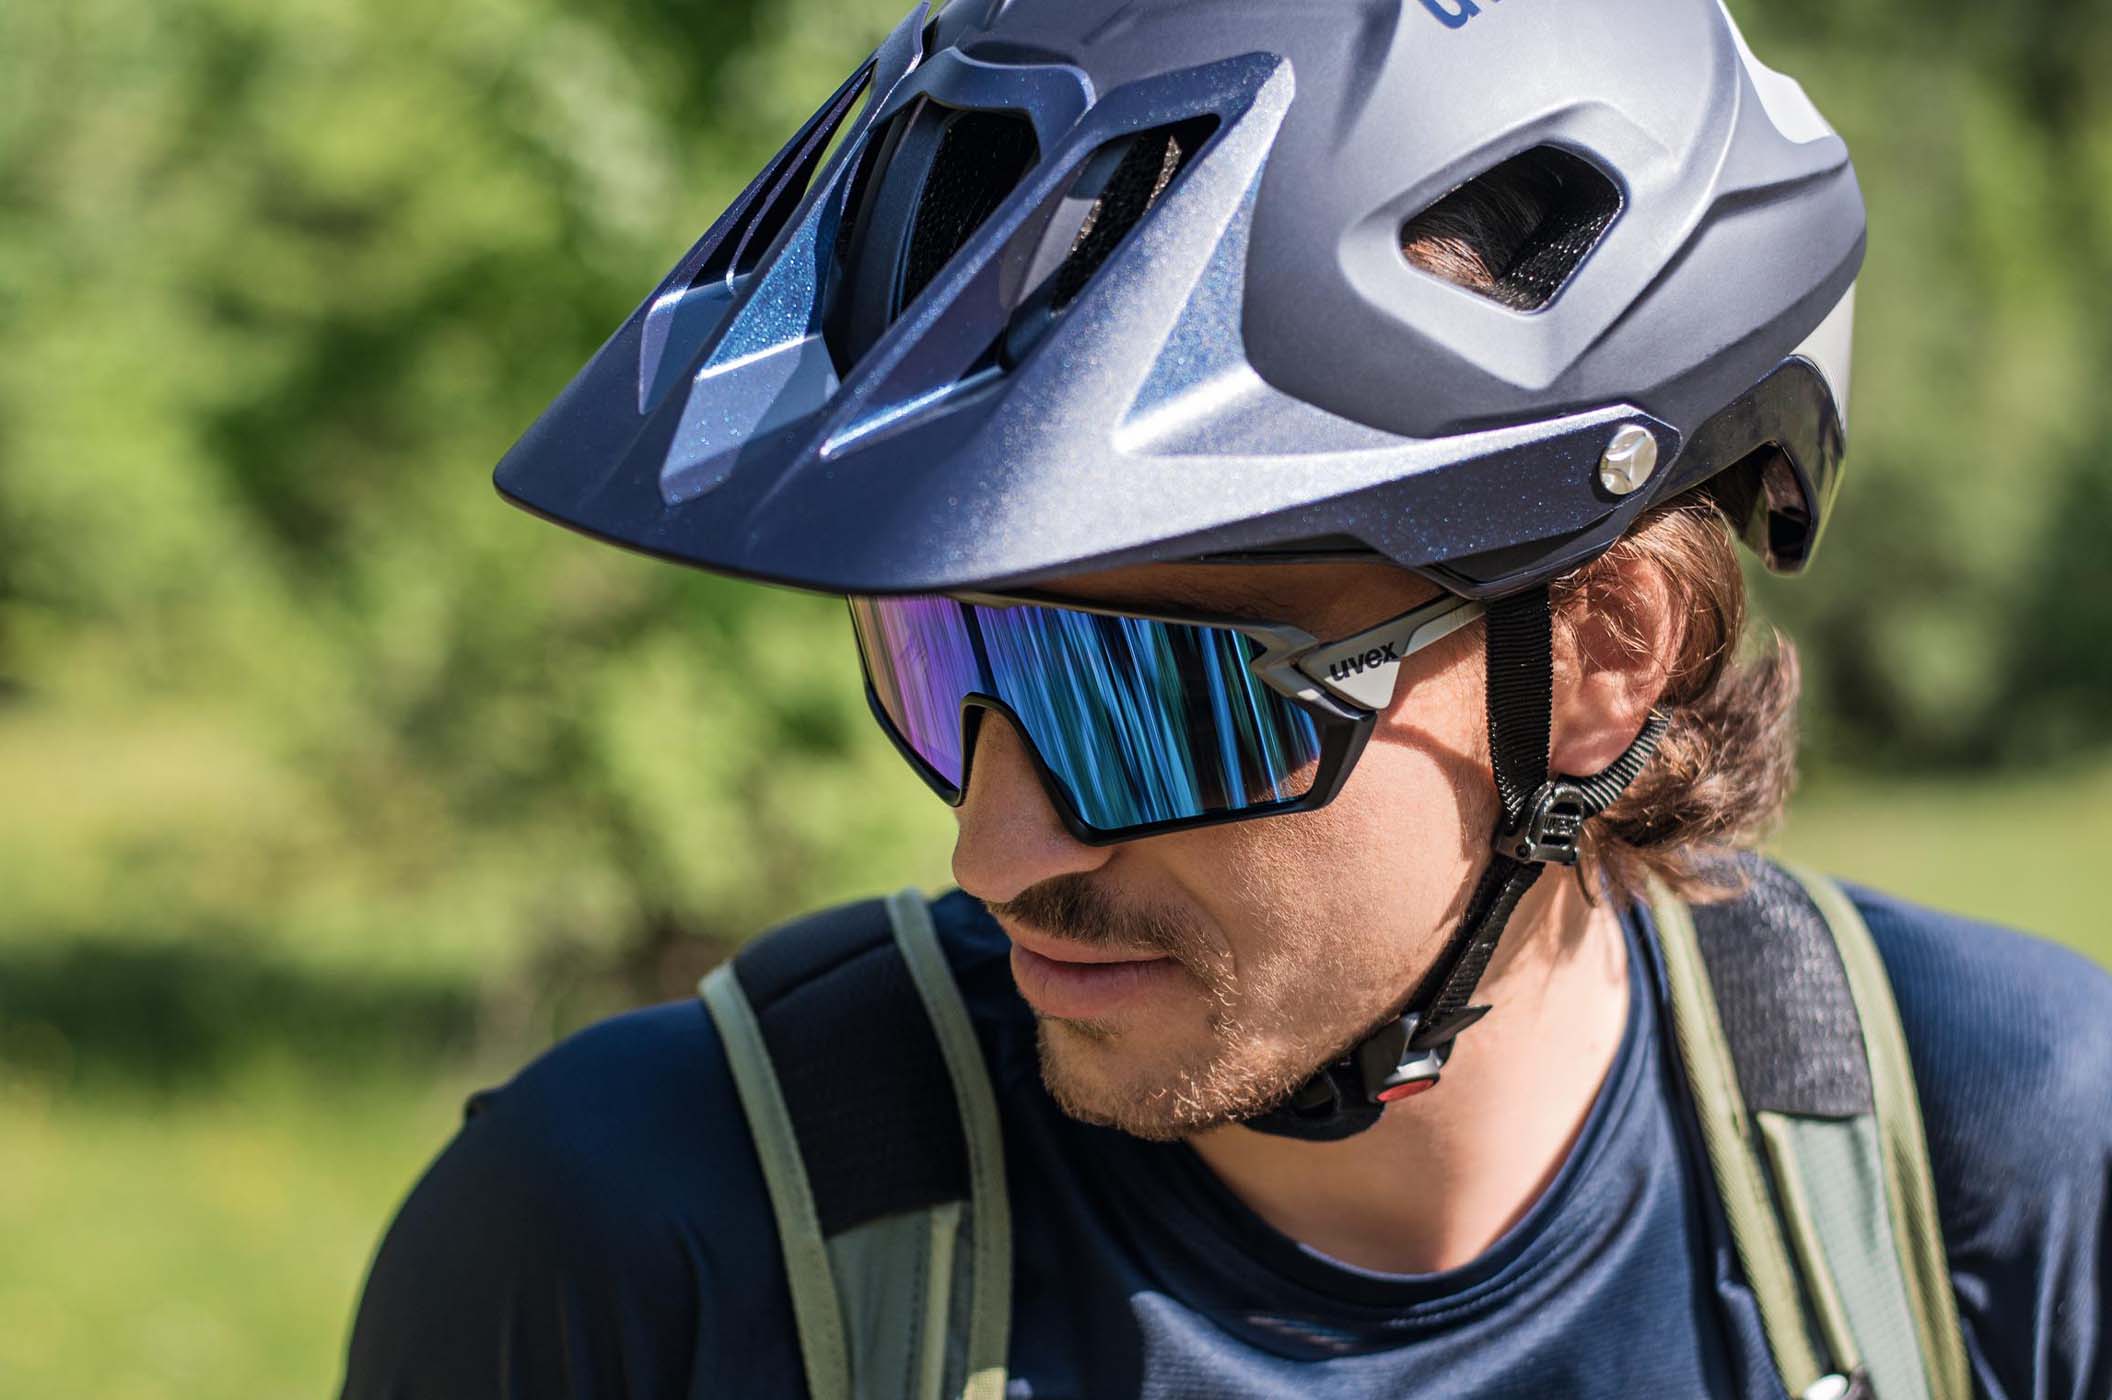 uvex – Fortschrittlichste Fahrradhelme und Sportbrillen "Made in Germany"